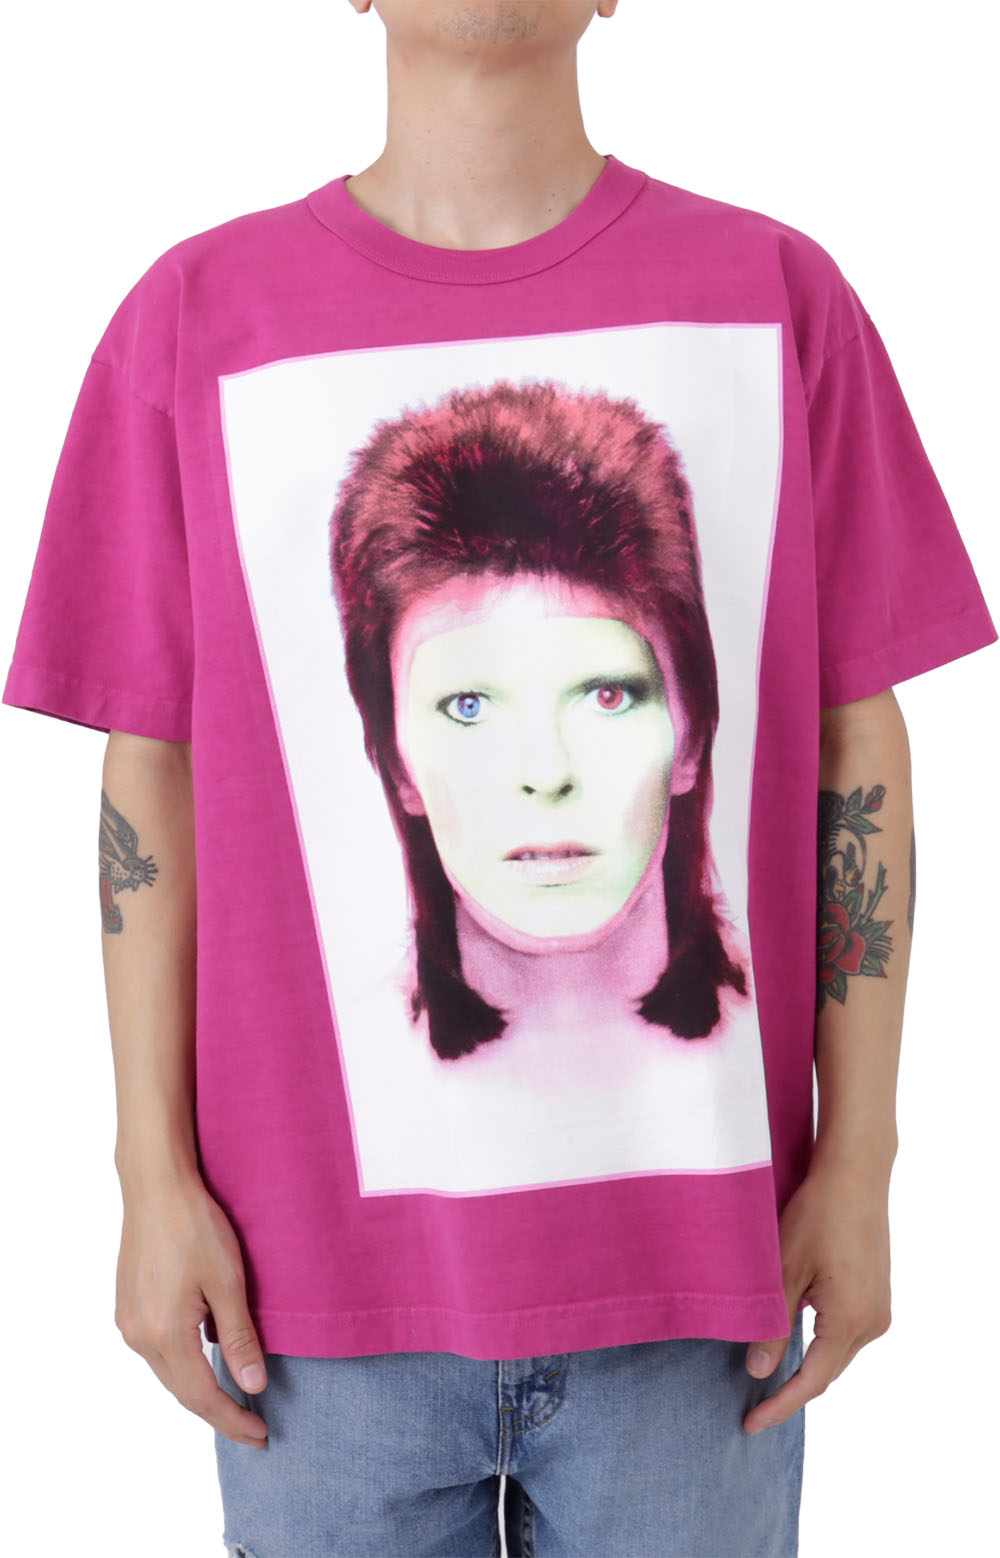 Whole Bowie Close Up T-Shirt